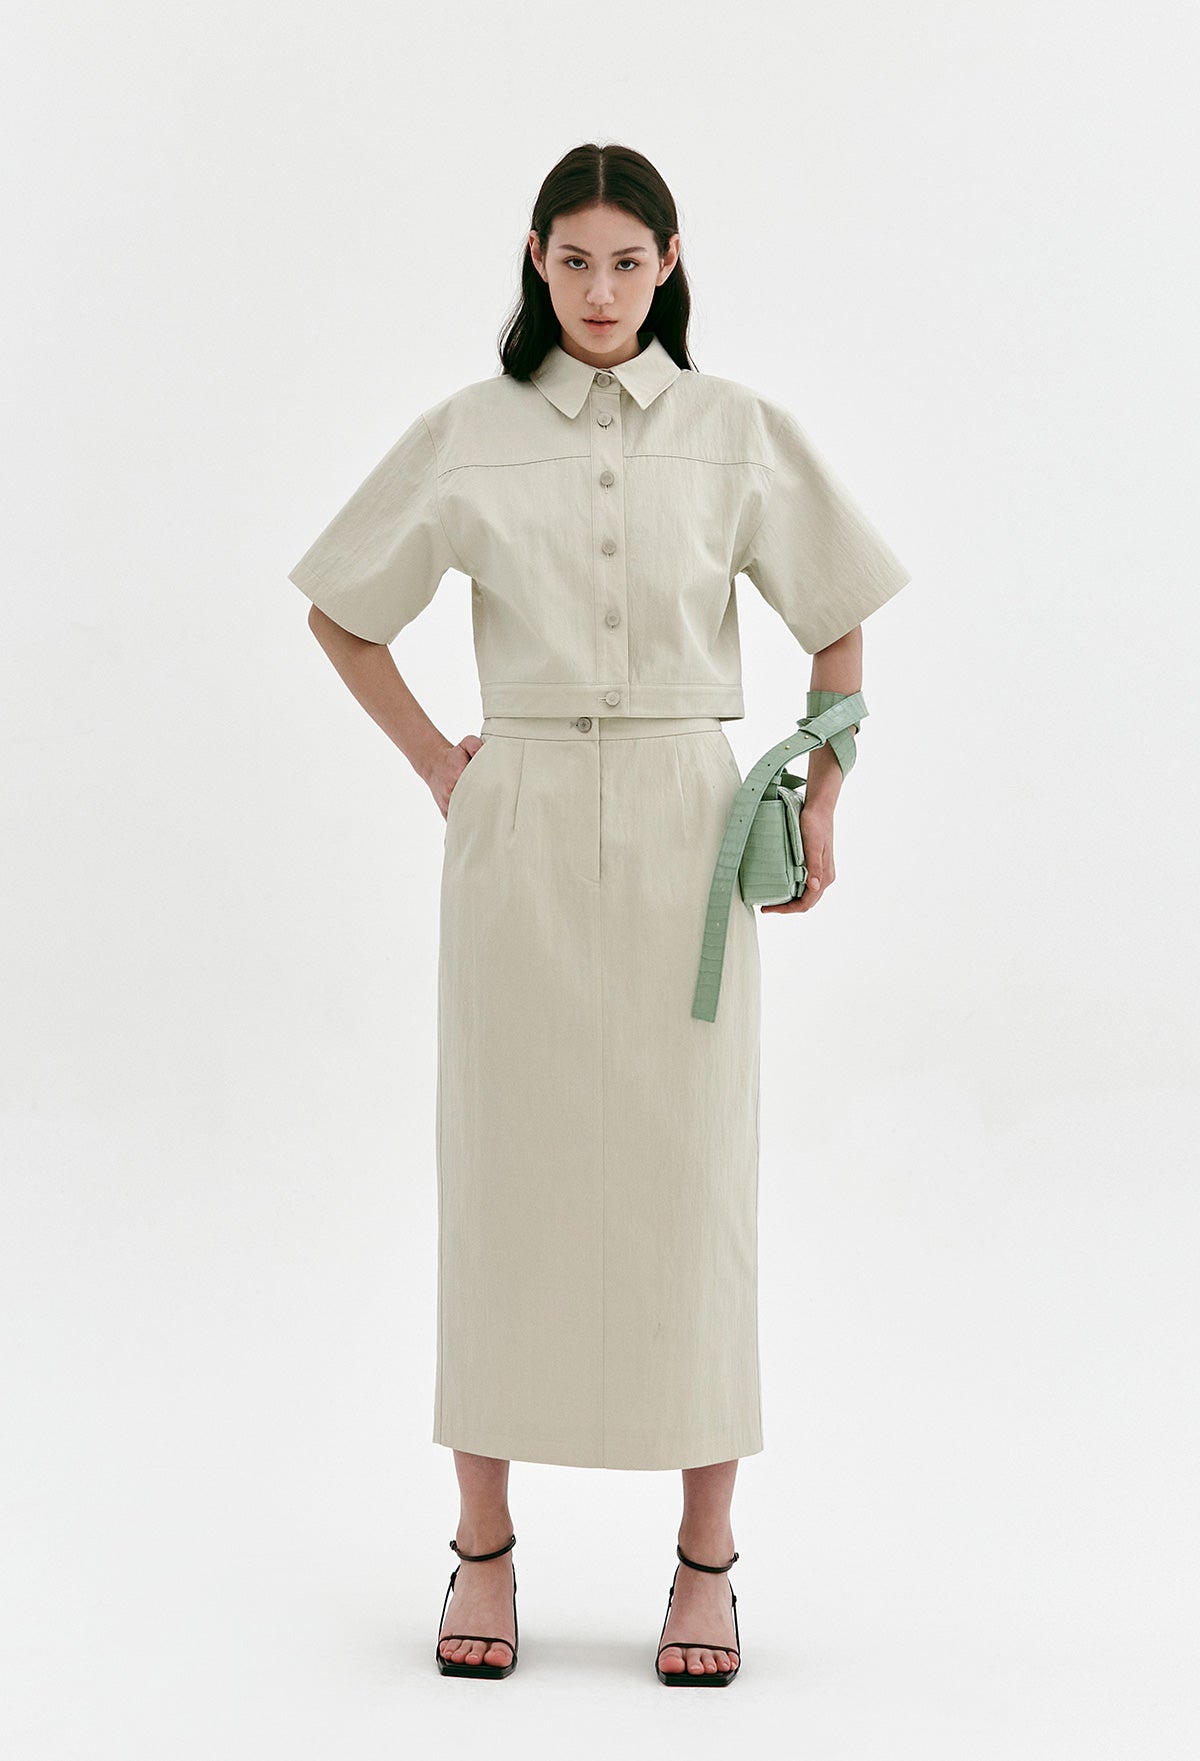 Cotton-blend Midi Skirt In Light Beige